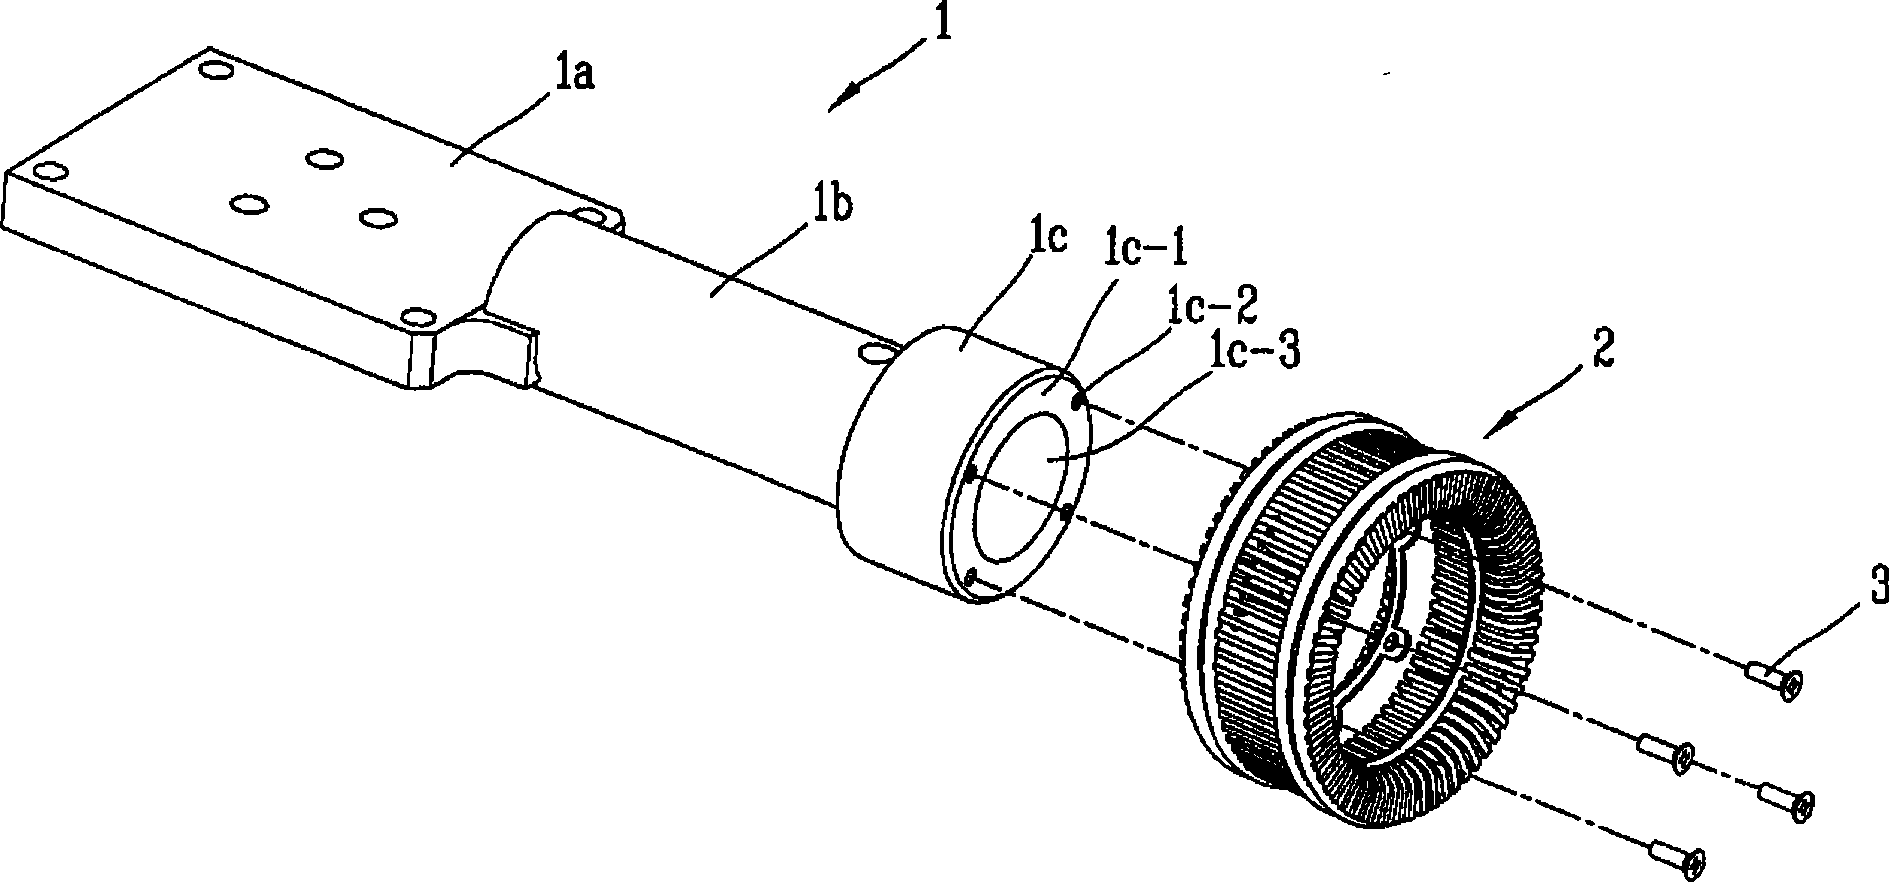 Contactor component of vacuum breaker